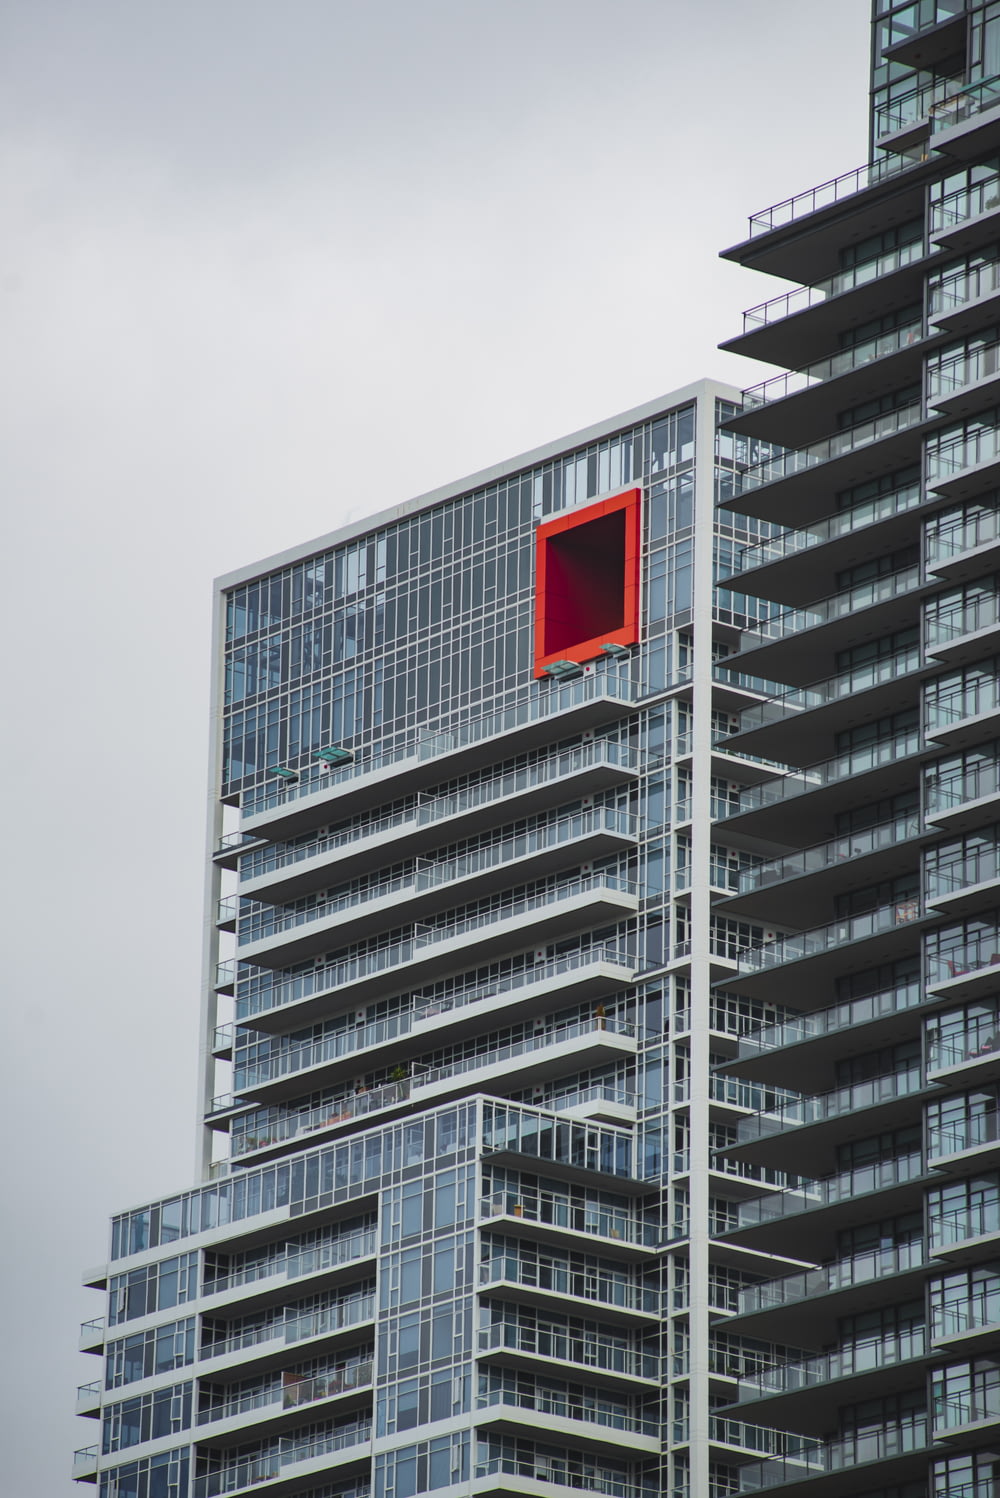 중앙에 빨간 사각형이 있는 고층 건물